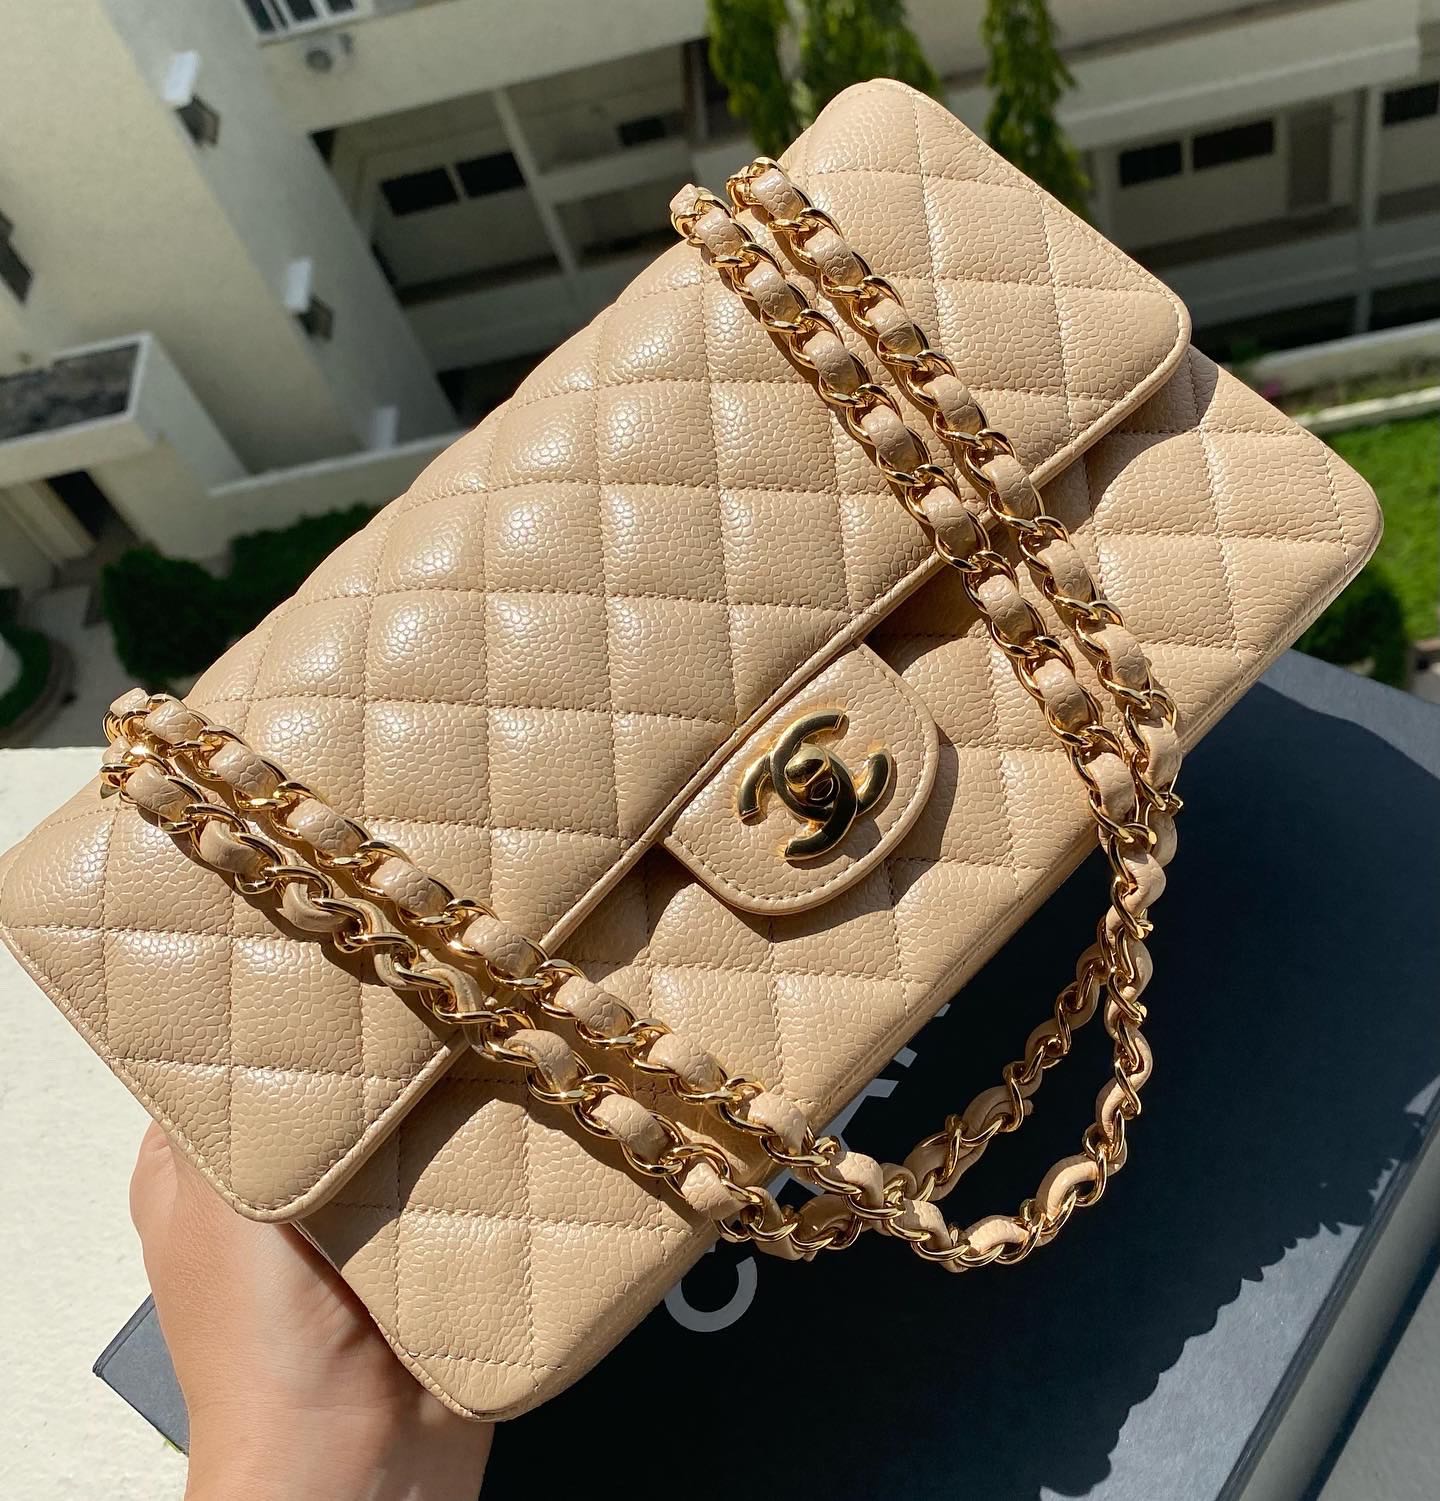 Chanel Beige Clair Large Classic Flap Bag 30cm